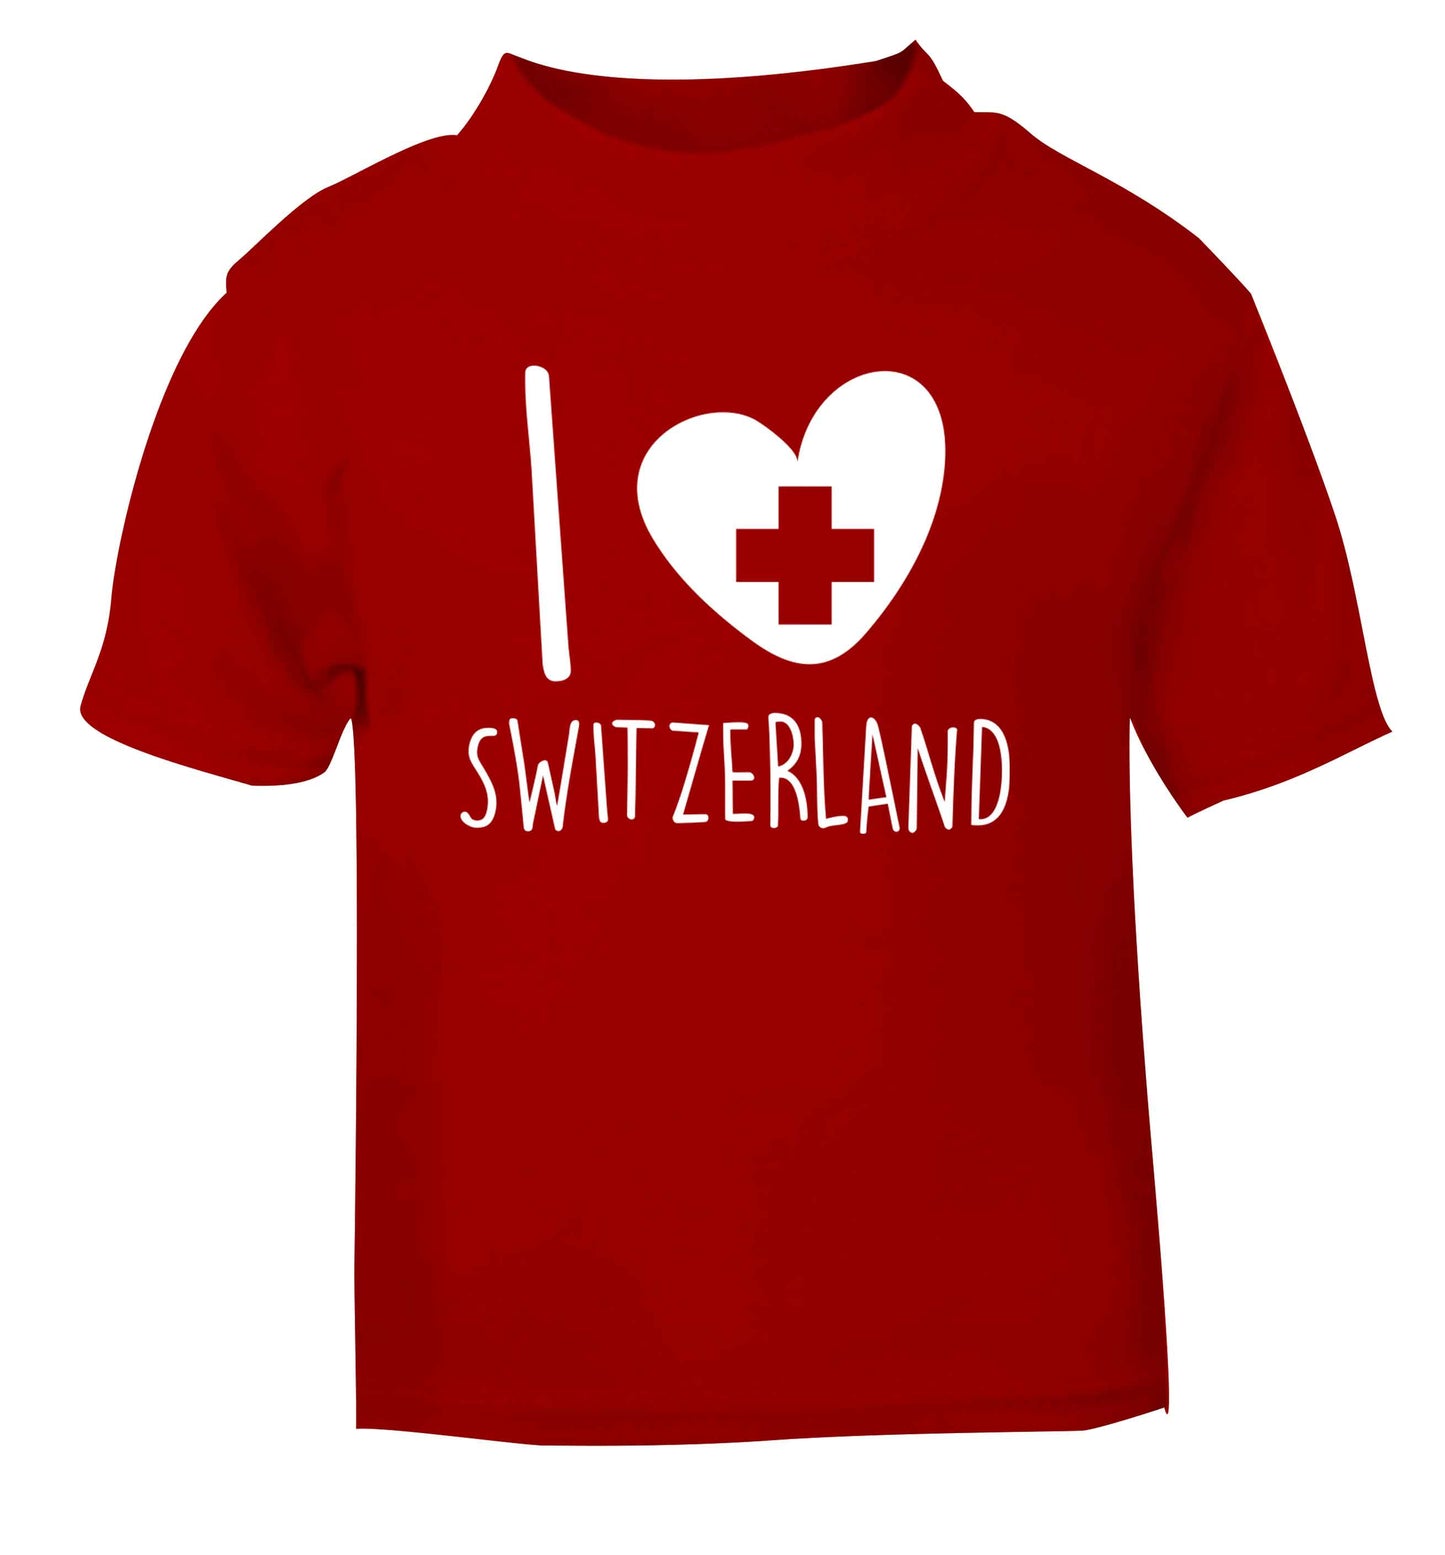 I love switzerland red Baby Toddler Tshirt 2 Years